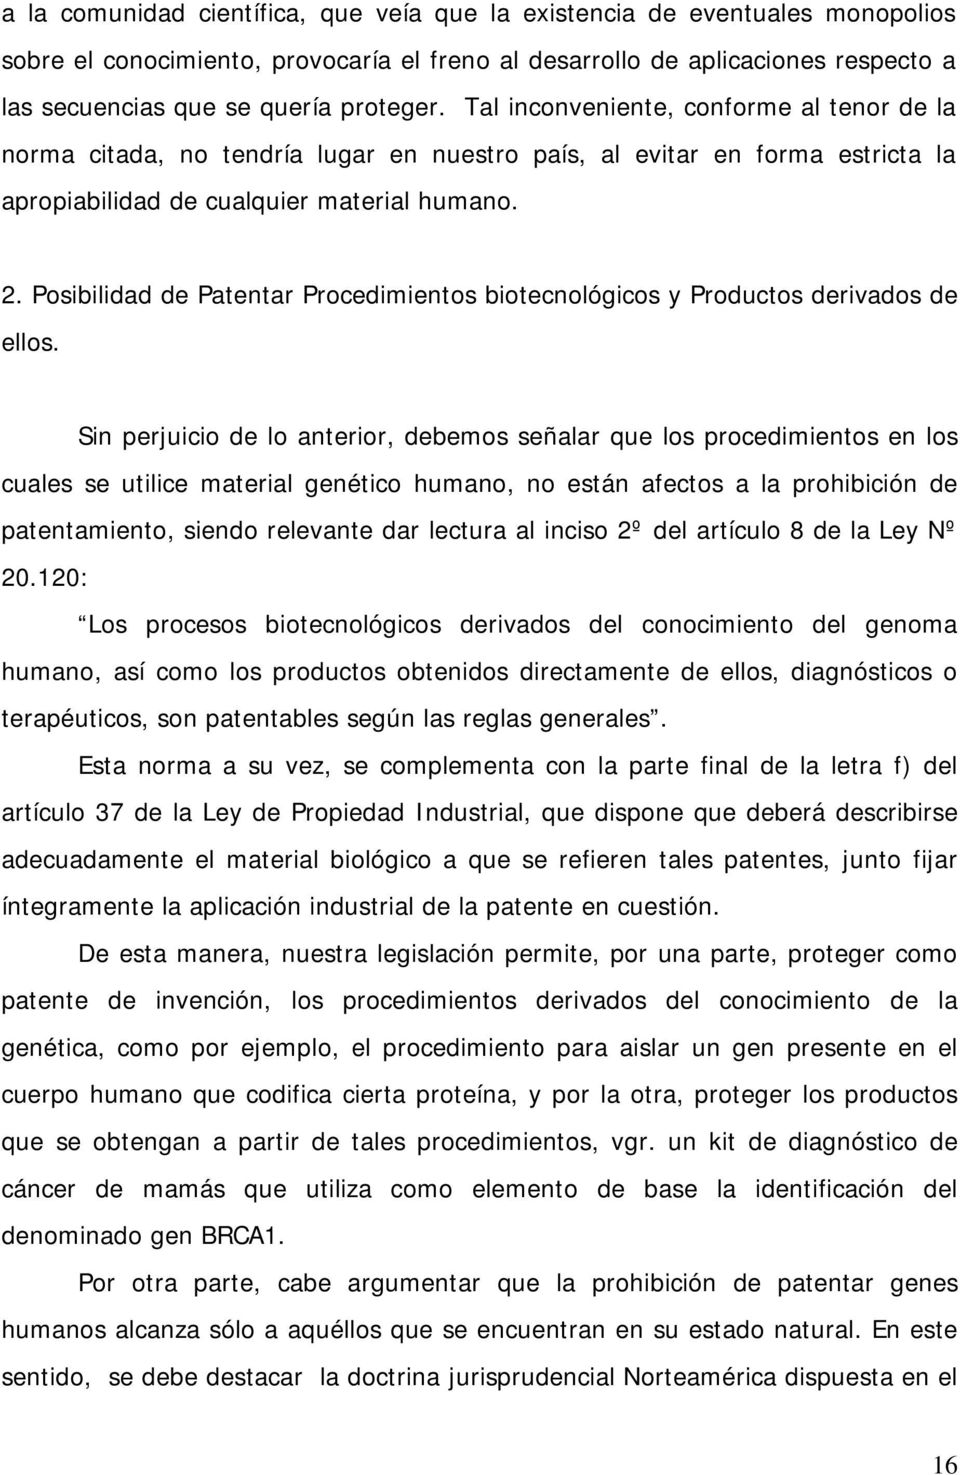 Posibilidad de Patentar Procedimientos biotecnológicos y Productos derivados de ellos.